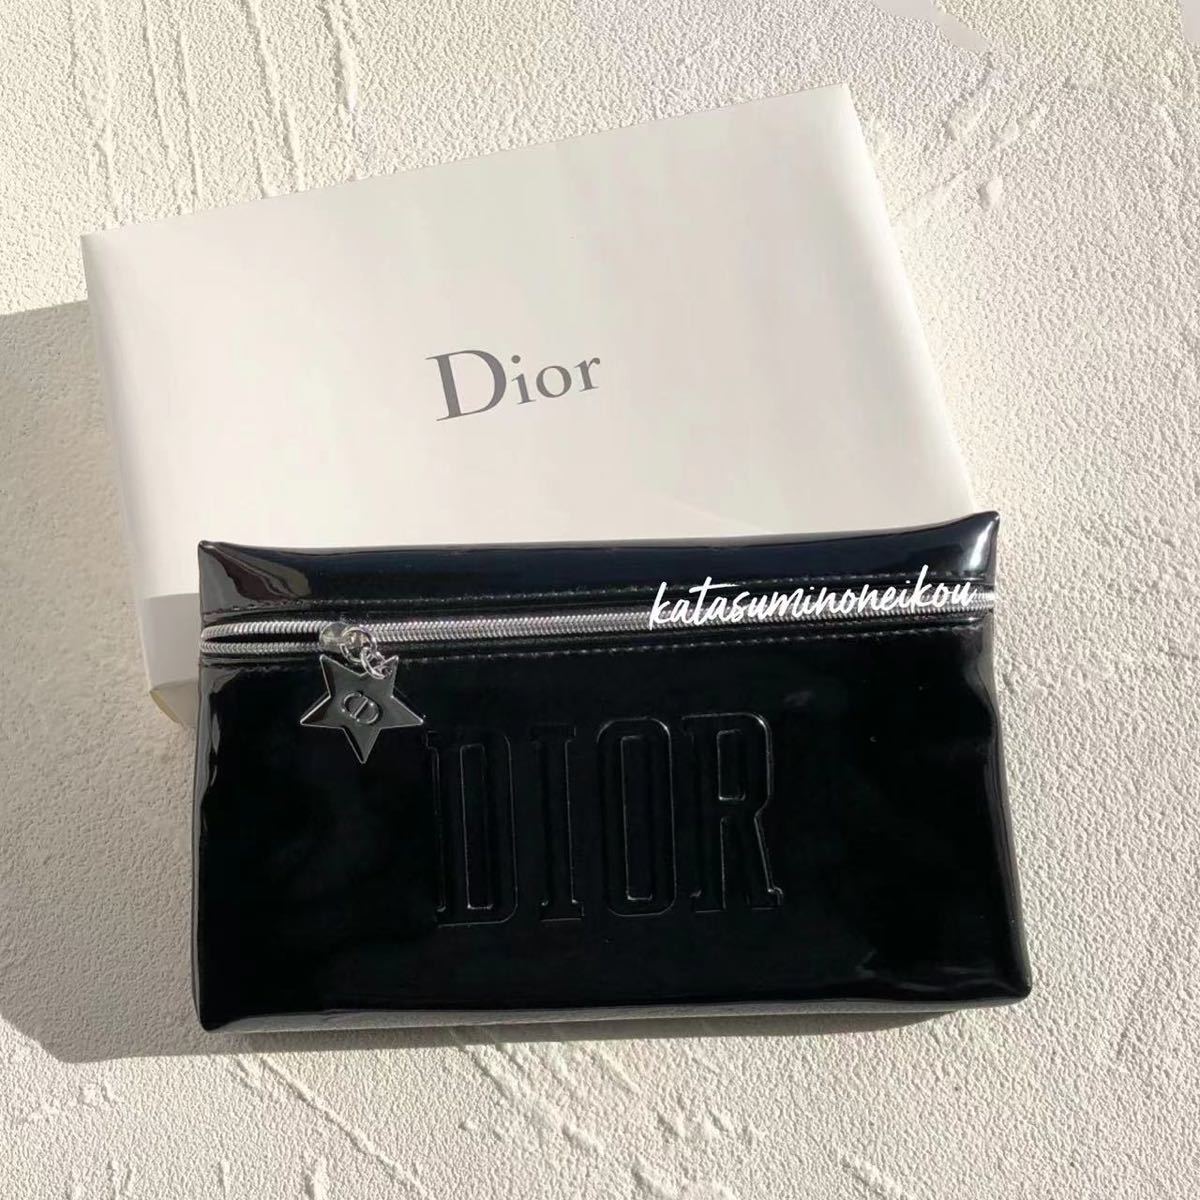 ディオール Dior ノベルティポーチ 化粧ポーチ ブラック 正規品